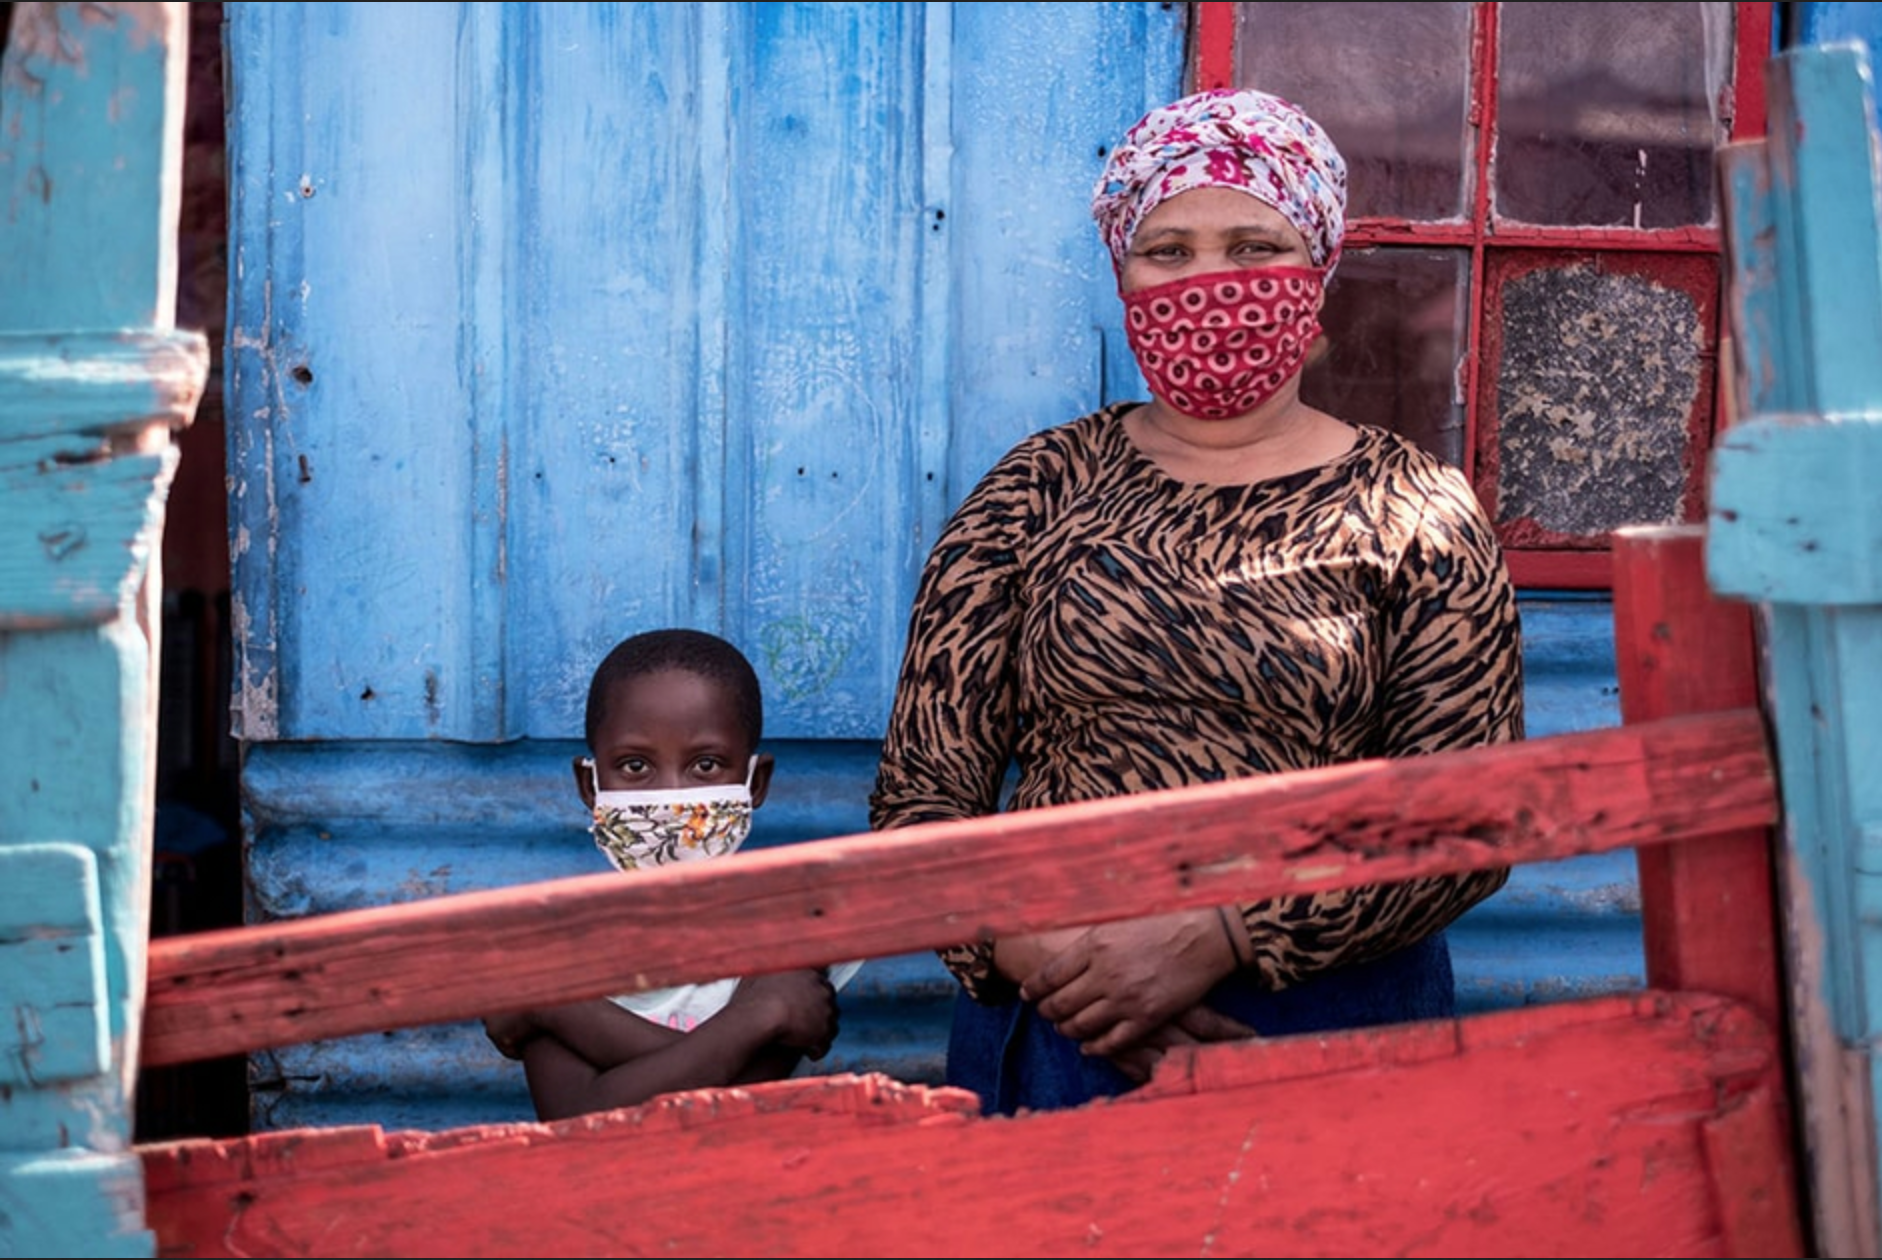 Les femmes et les enfants subissent de plein fouet les effets collatéraux de la crise sanitaire, comme Noluvuyo Gadela et sa fille Siamtanda à Khayelitsha, dans la banlieue du Cap © Tommy Trenchard/PANOS-REA